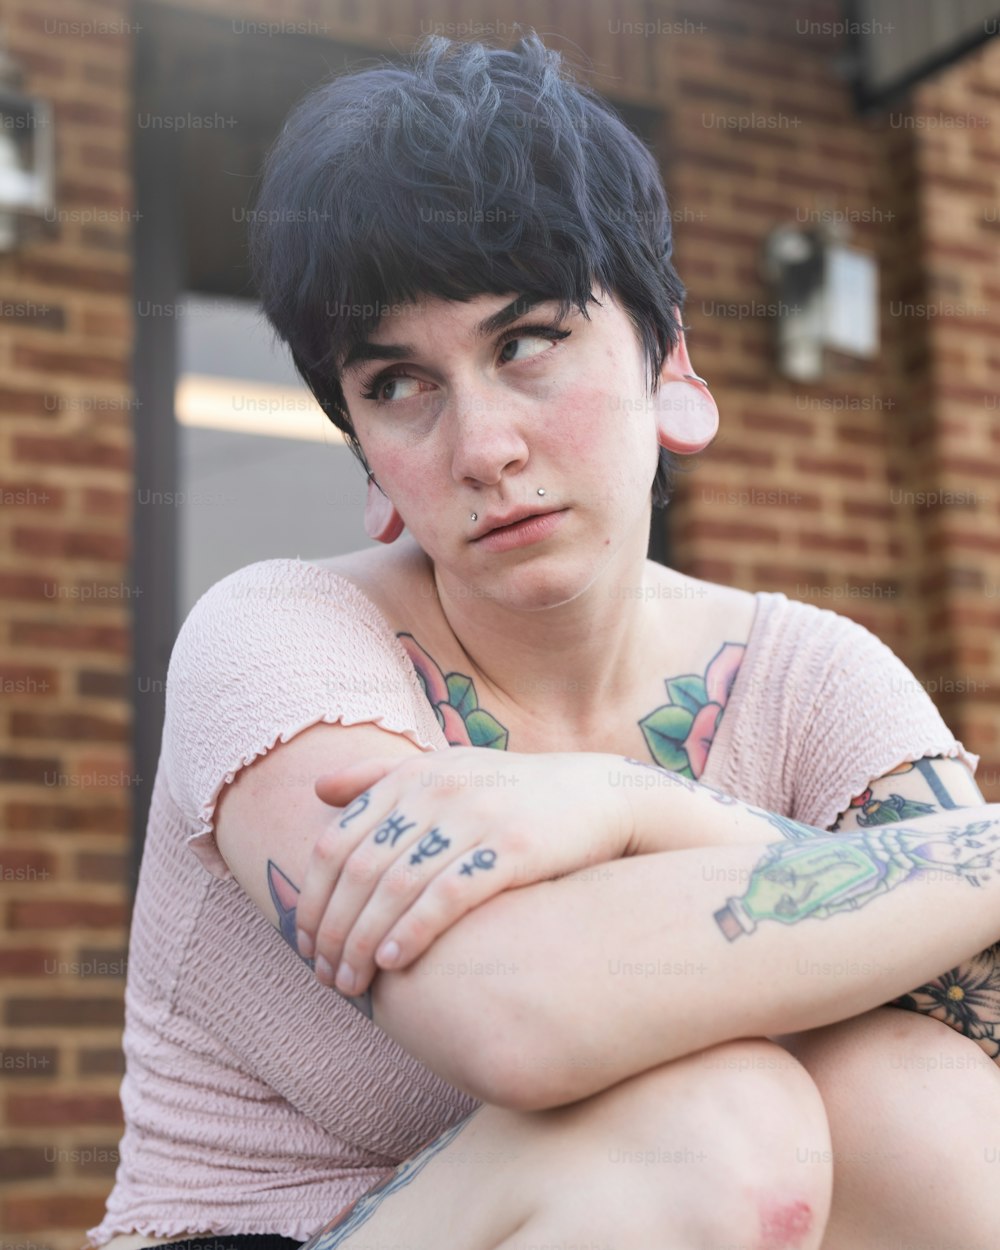 Eine Frau mit Tätowierungen, die auf einer Bank sitzt